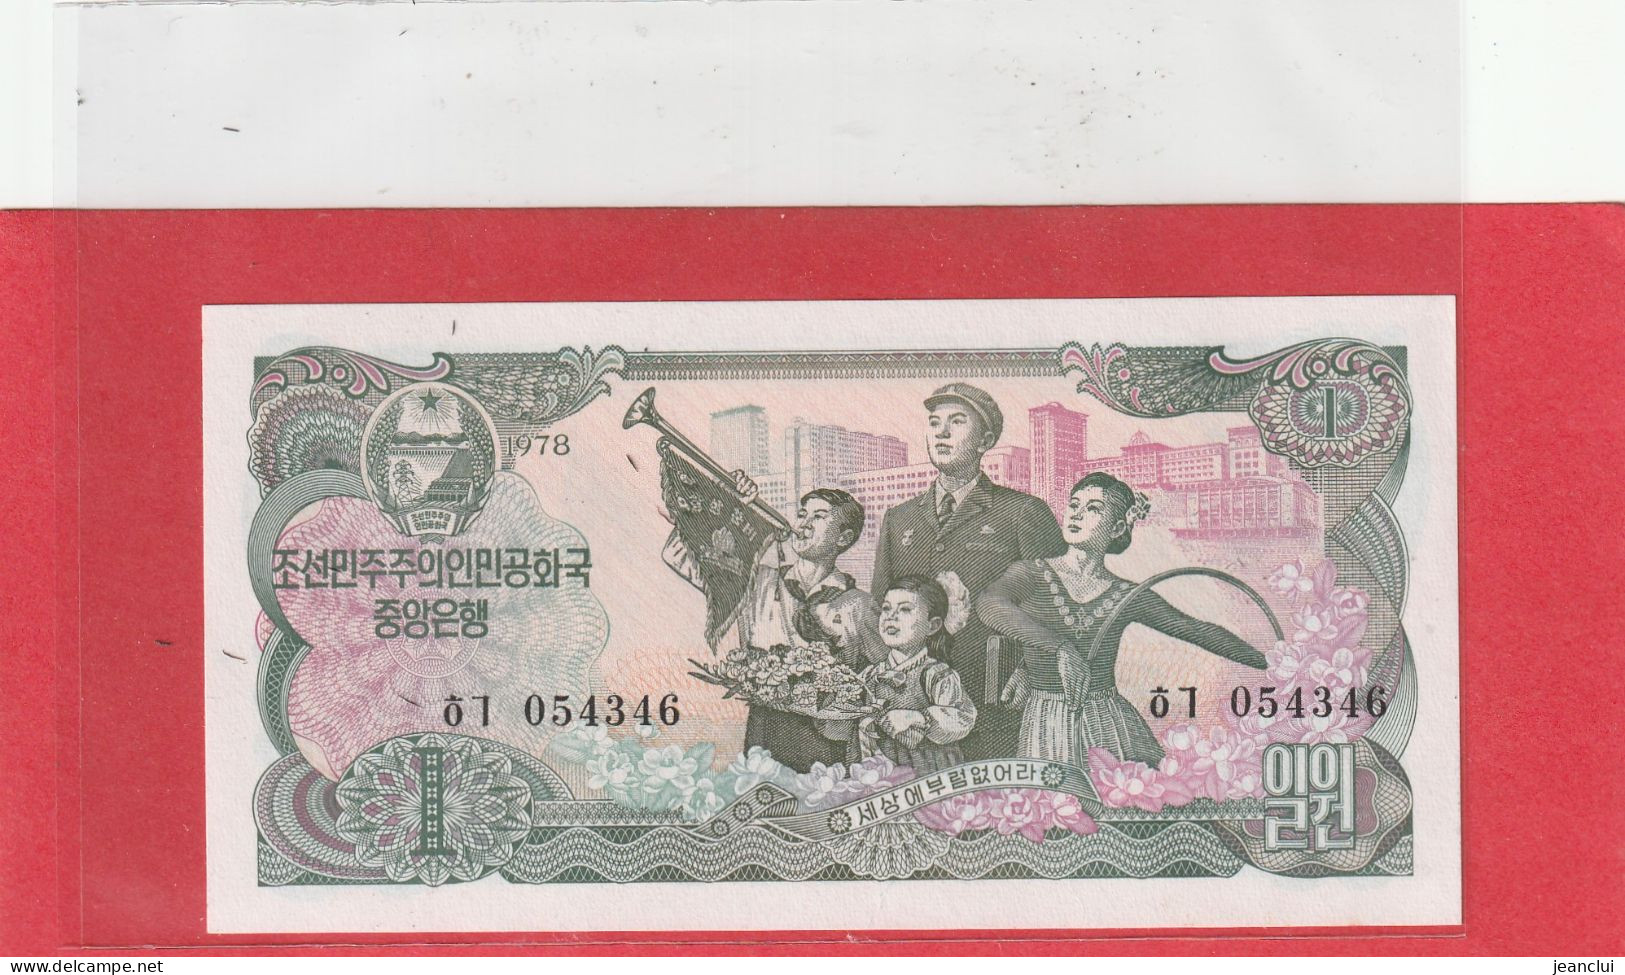 DEMOCRATIC PEOPLES REPUBLIC . KOREA-NORTH CENTRAL BANK 1 WON .  1978  .  N° 054346 - Corea Del Norte